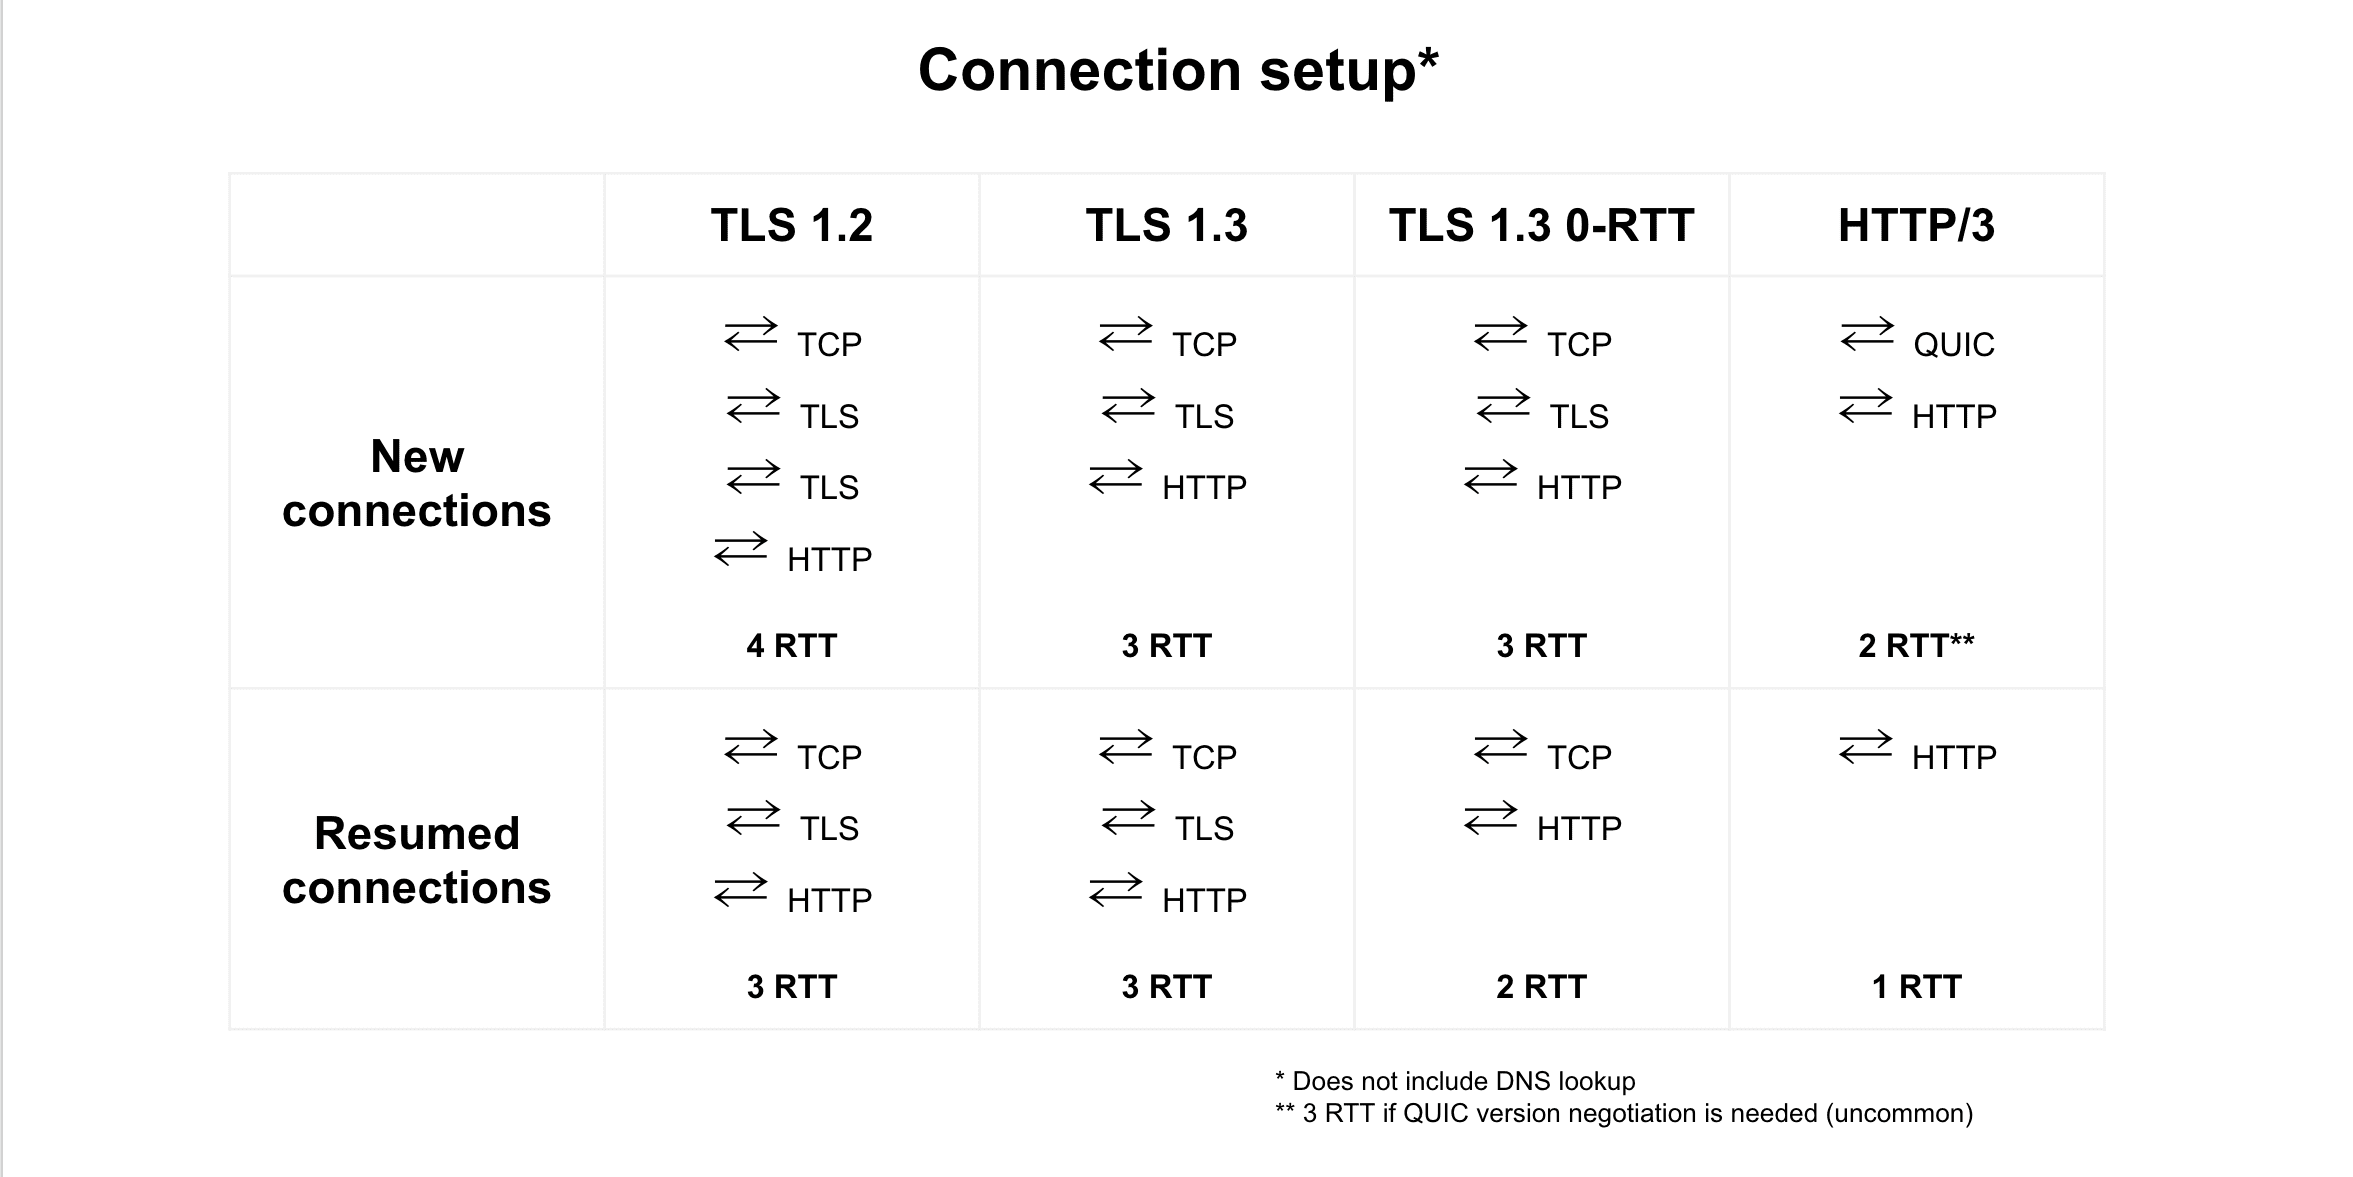 Perbandingan kembali koneksi antara TLS 1.2, TLS 1.3, TLS 1.3 0-RTT, dan HTTP/3